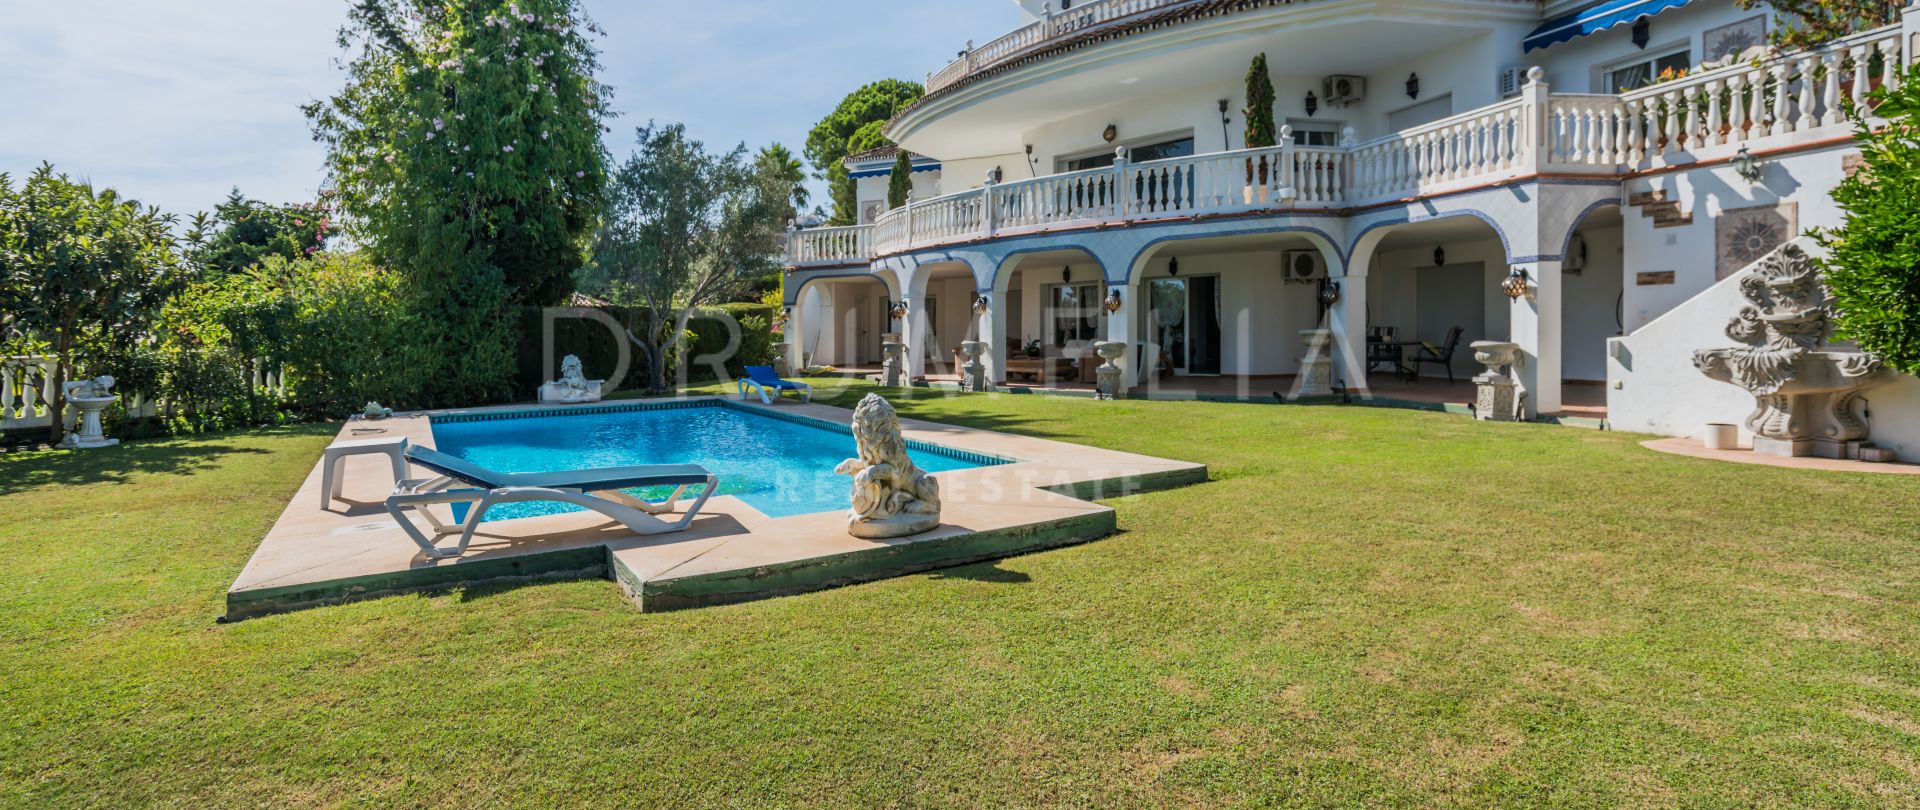 Elegante klassische mediterrane Luxus-Villa, Paraiso Alto, Benahavis